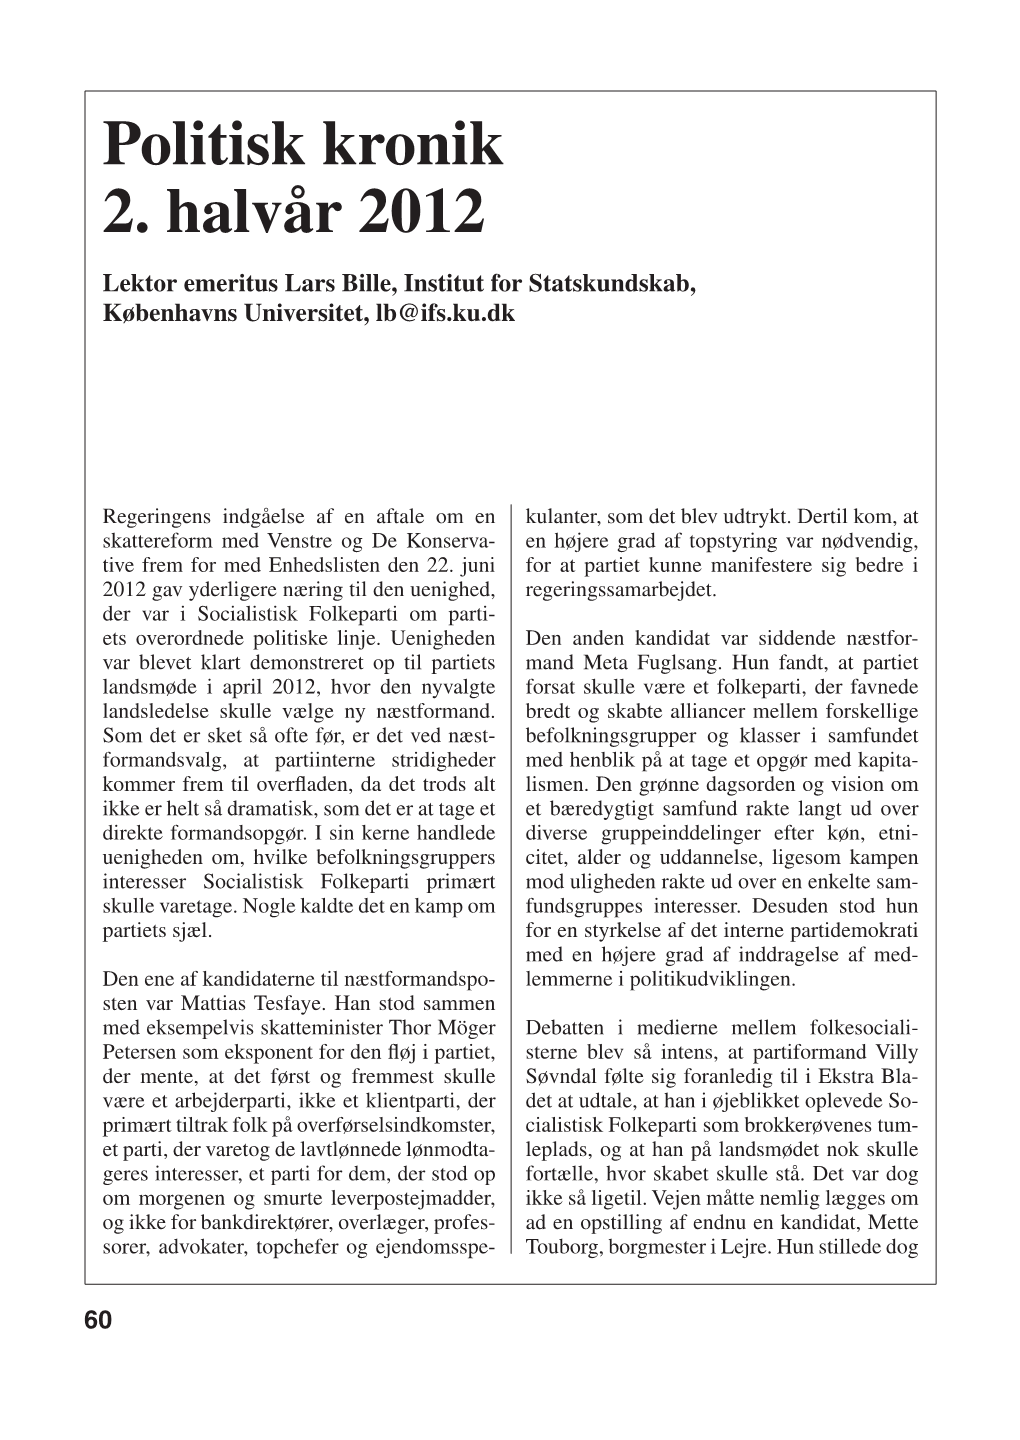 Politisk Kronik 2. Halvår 2012 Af Lars Bille